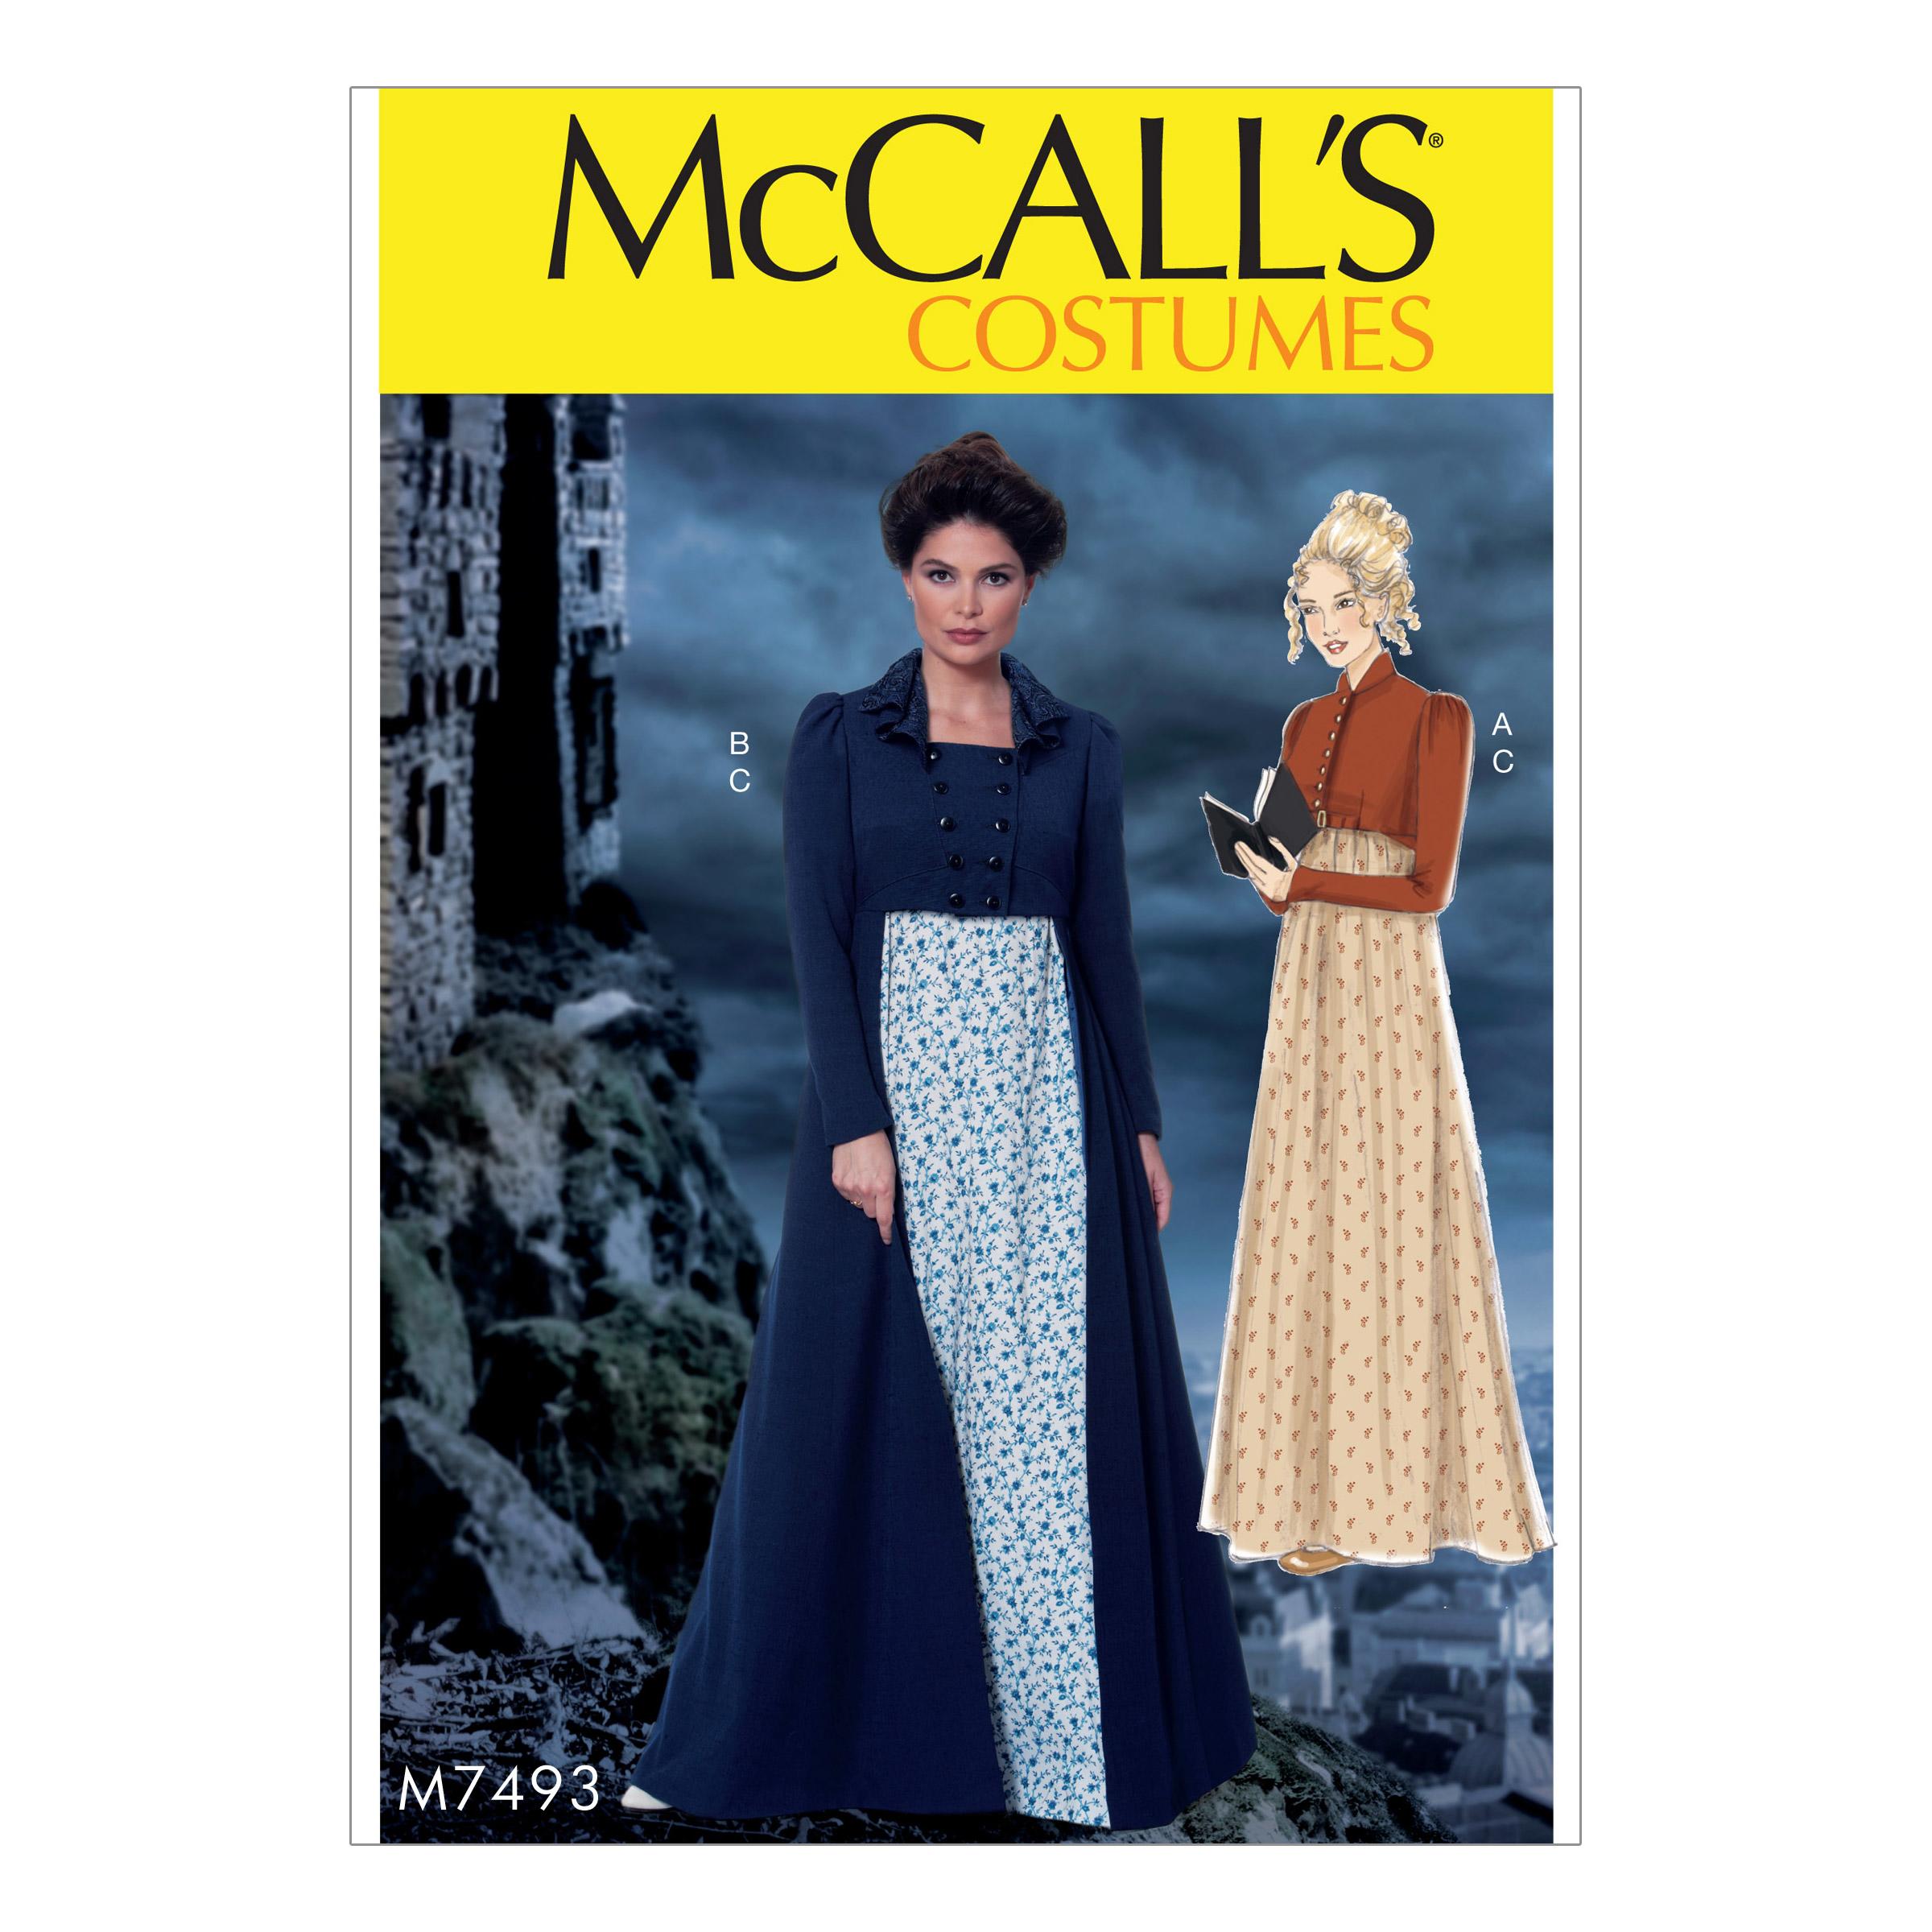 McCalls M7493 Costumes